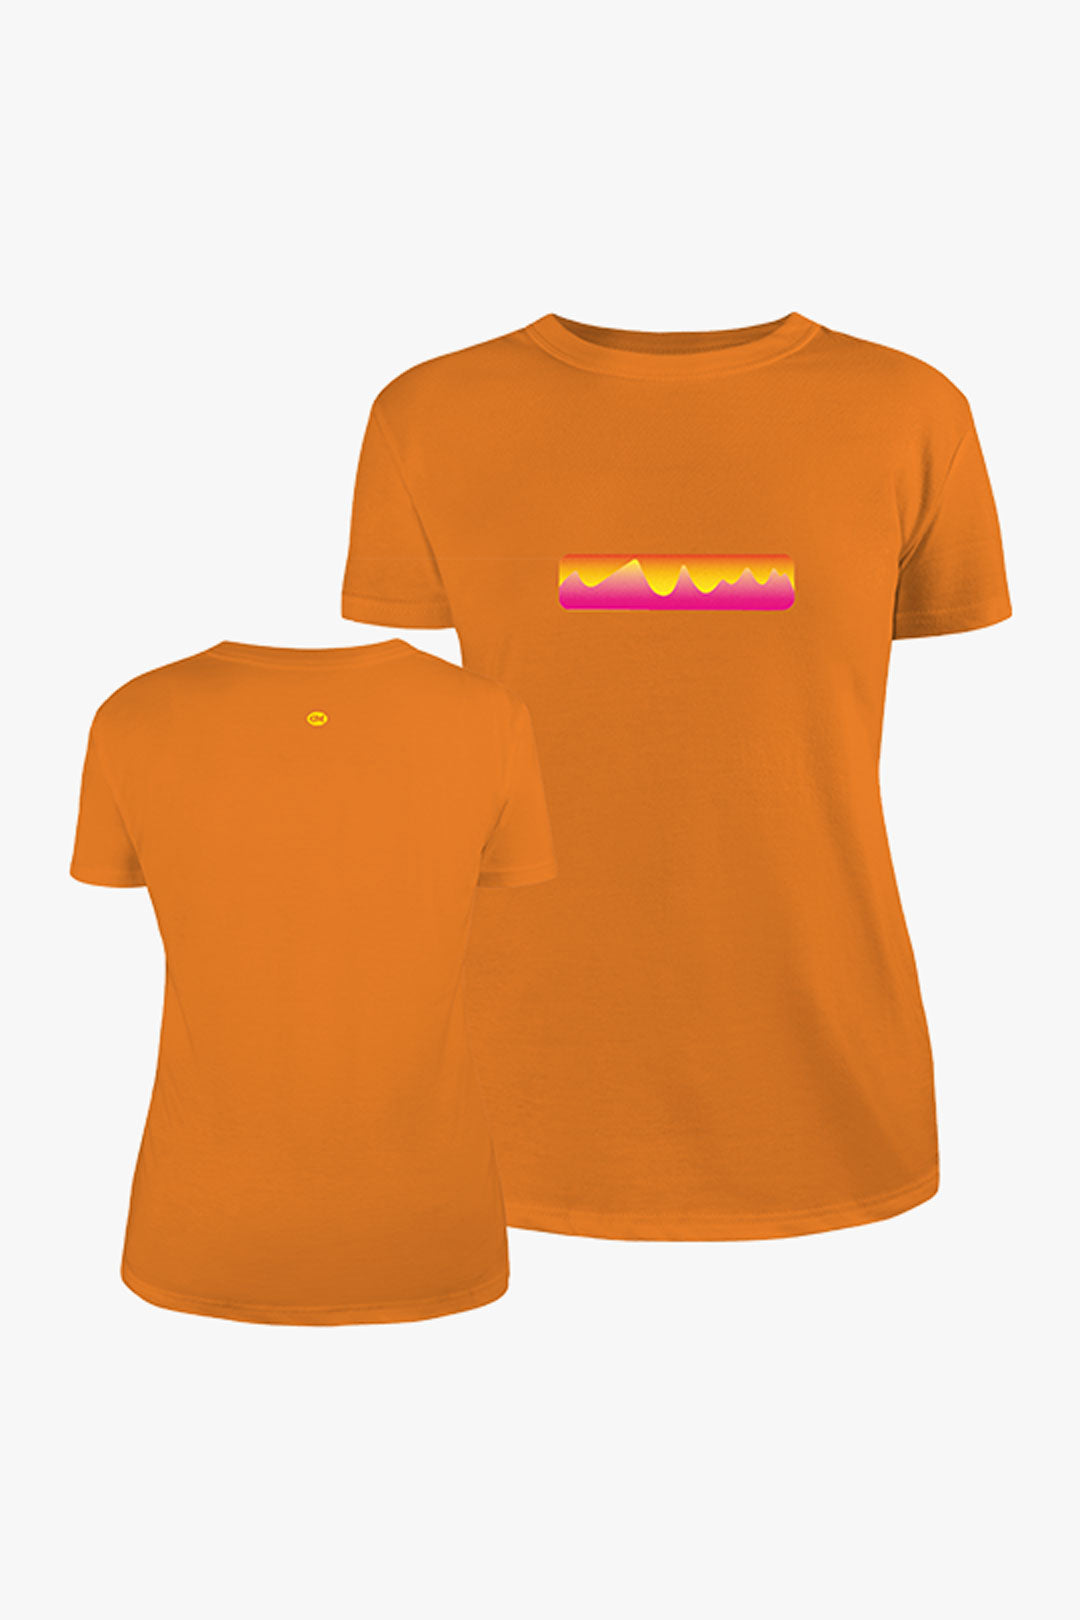 T-shirt Skyline 8010 | T-shirt sagomata in cotone biologico